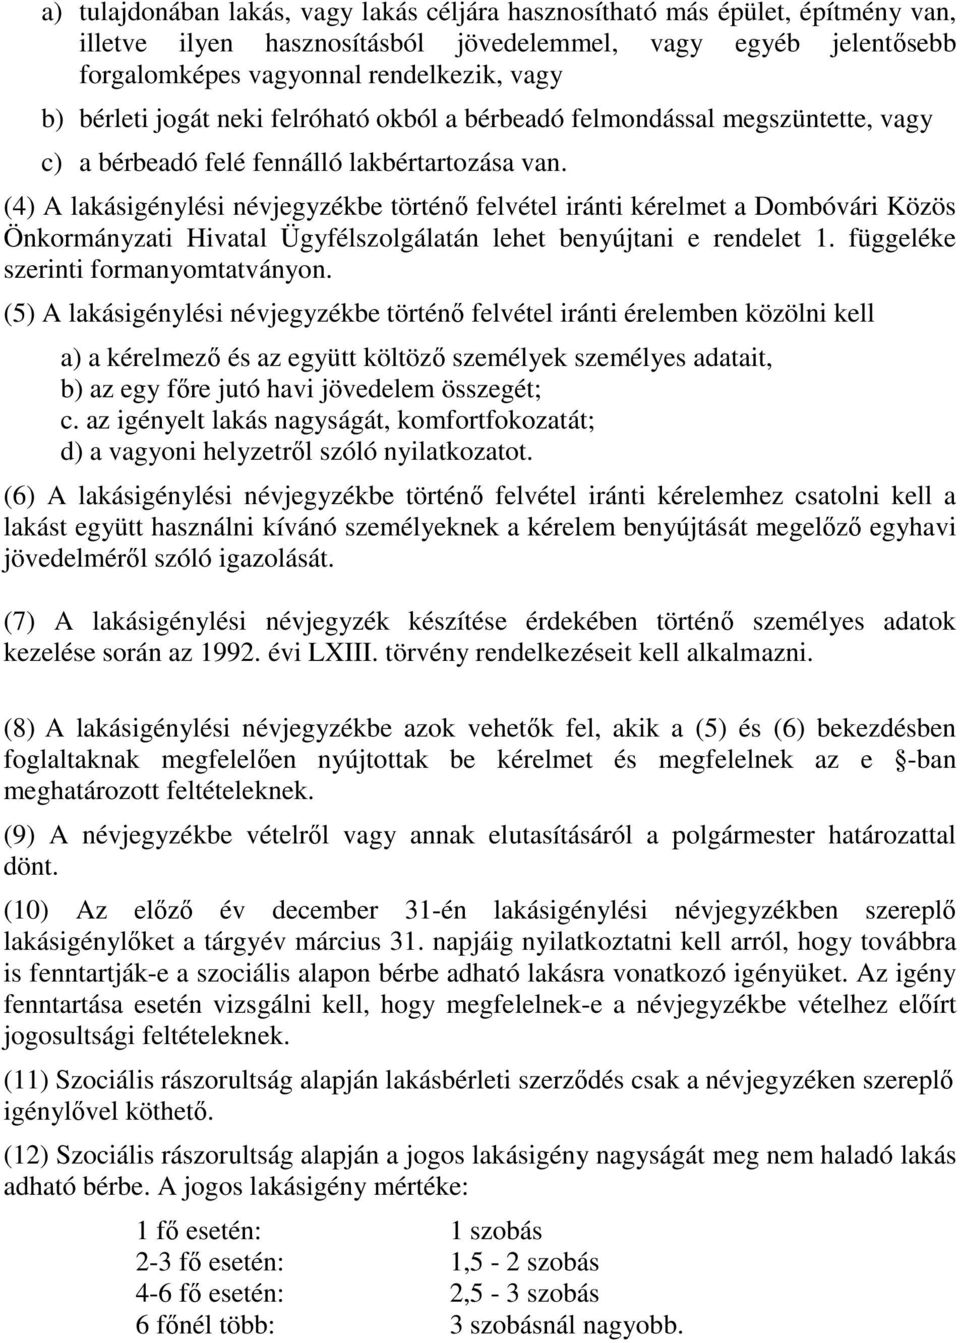 (4) A lakásigénylési névjegyzékbe történő felvétel iránti kérelmet a Dombóvári Közös Önkormányzati Hivatal Ügyfélszolgálatán lehet benyújtani e rendelet 1. függeléke szerinti formanyomtatványon.